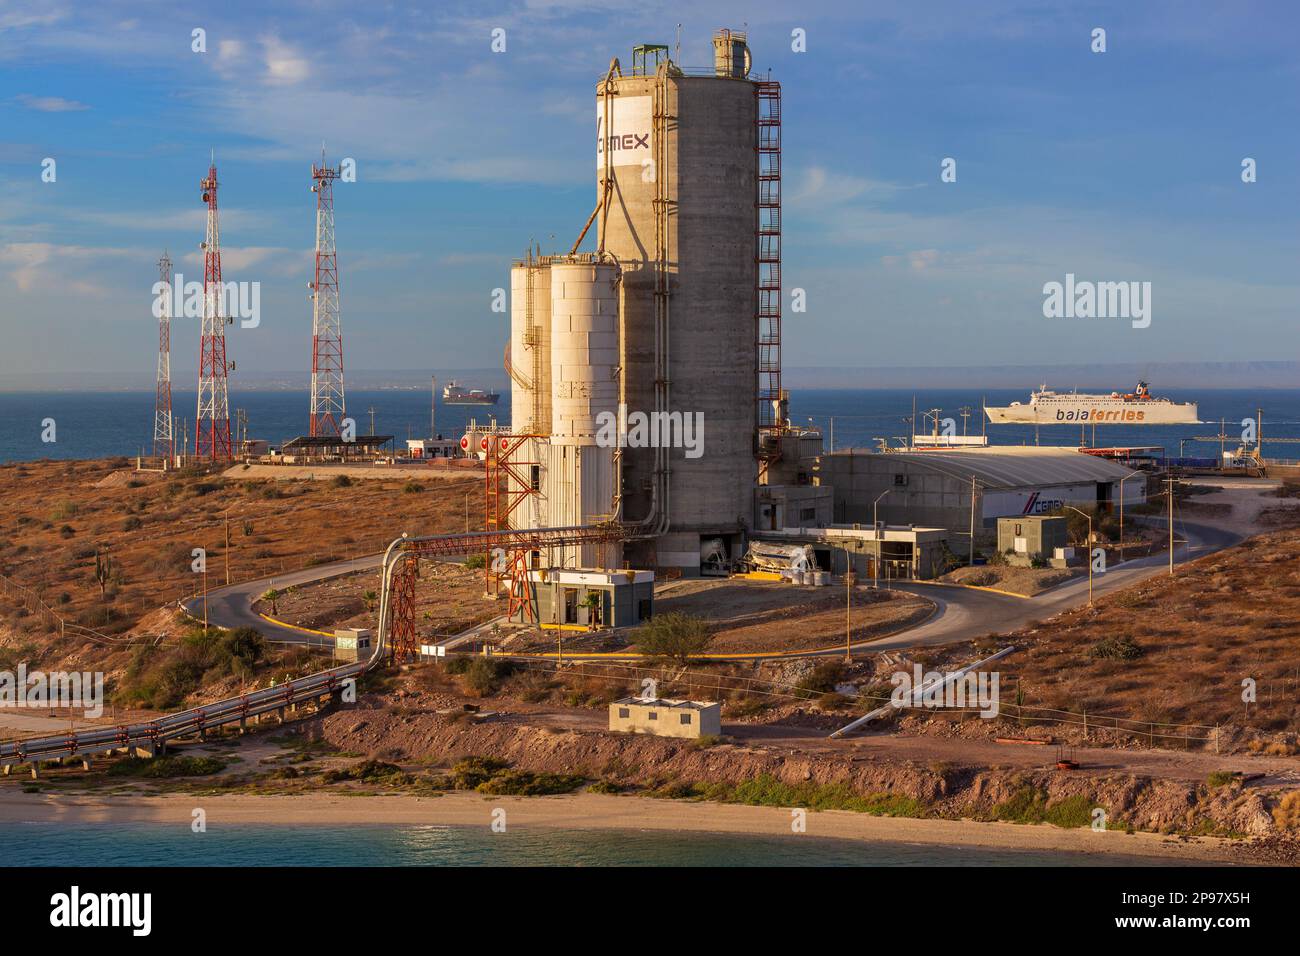 Cement factory, Puerto De Pichilingue, La Paz City, Baja California Sur, Mexico Stock Photo